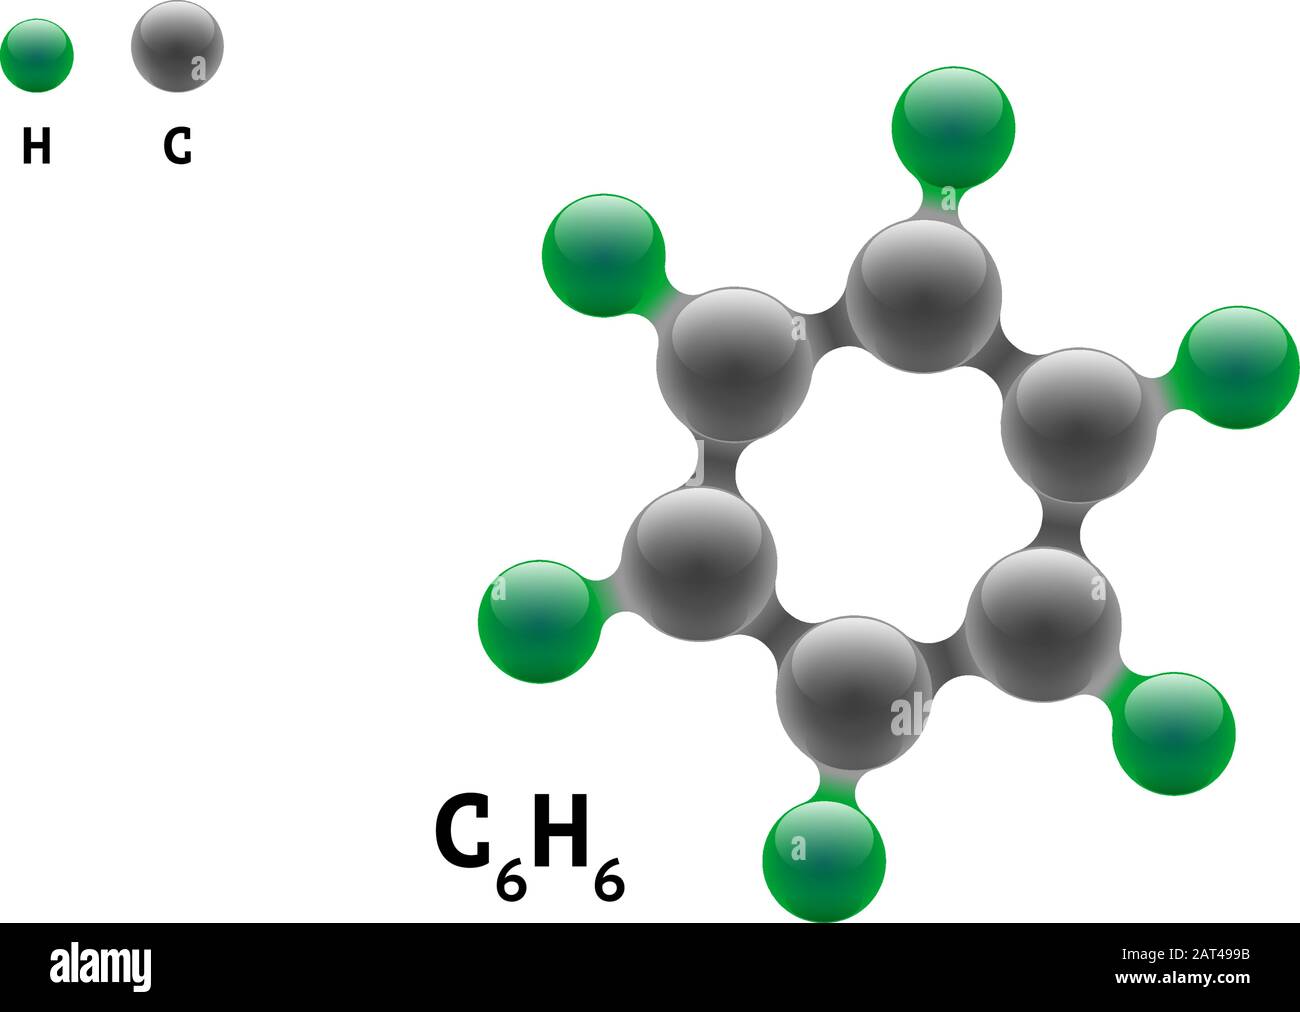 Chemie-Modell Molekül Benzol C6H6 wissenschaftliche Element Formel. Integrierte Partikel natürliche anorganische 3d-Benzol-Molekülstrukturverbindung. Sechs Kohlenstoff und Wasserstoff Volumen Atom Vektor eps Kugeln Stock Vektor